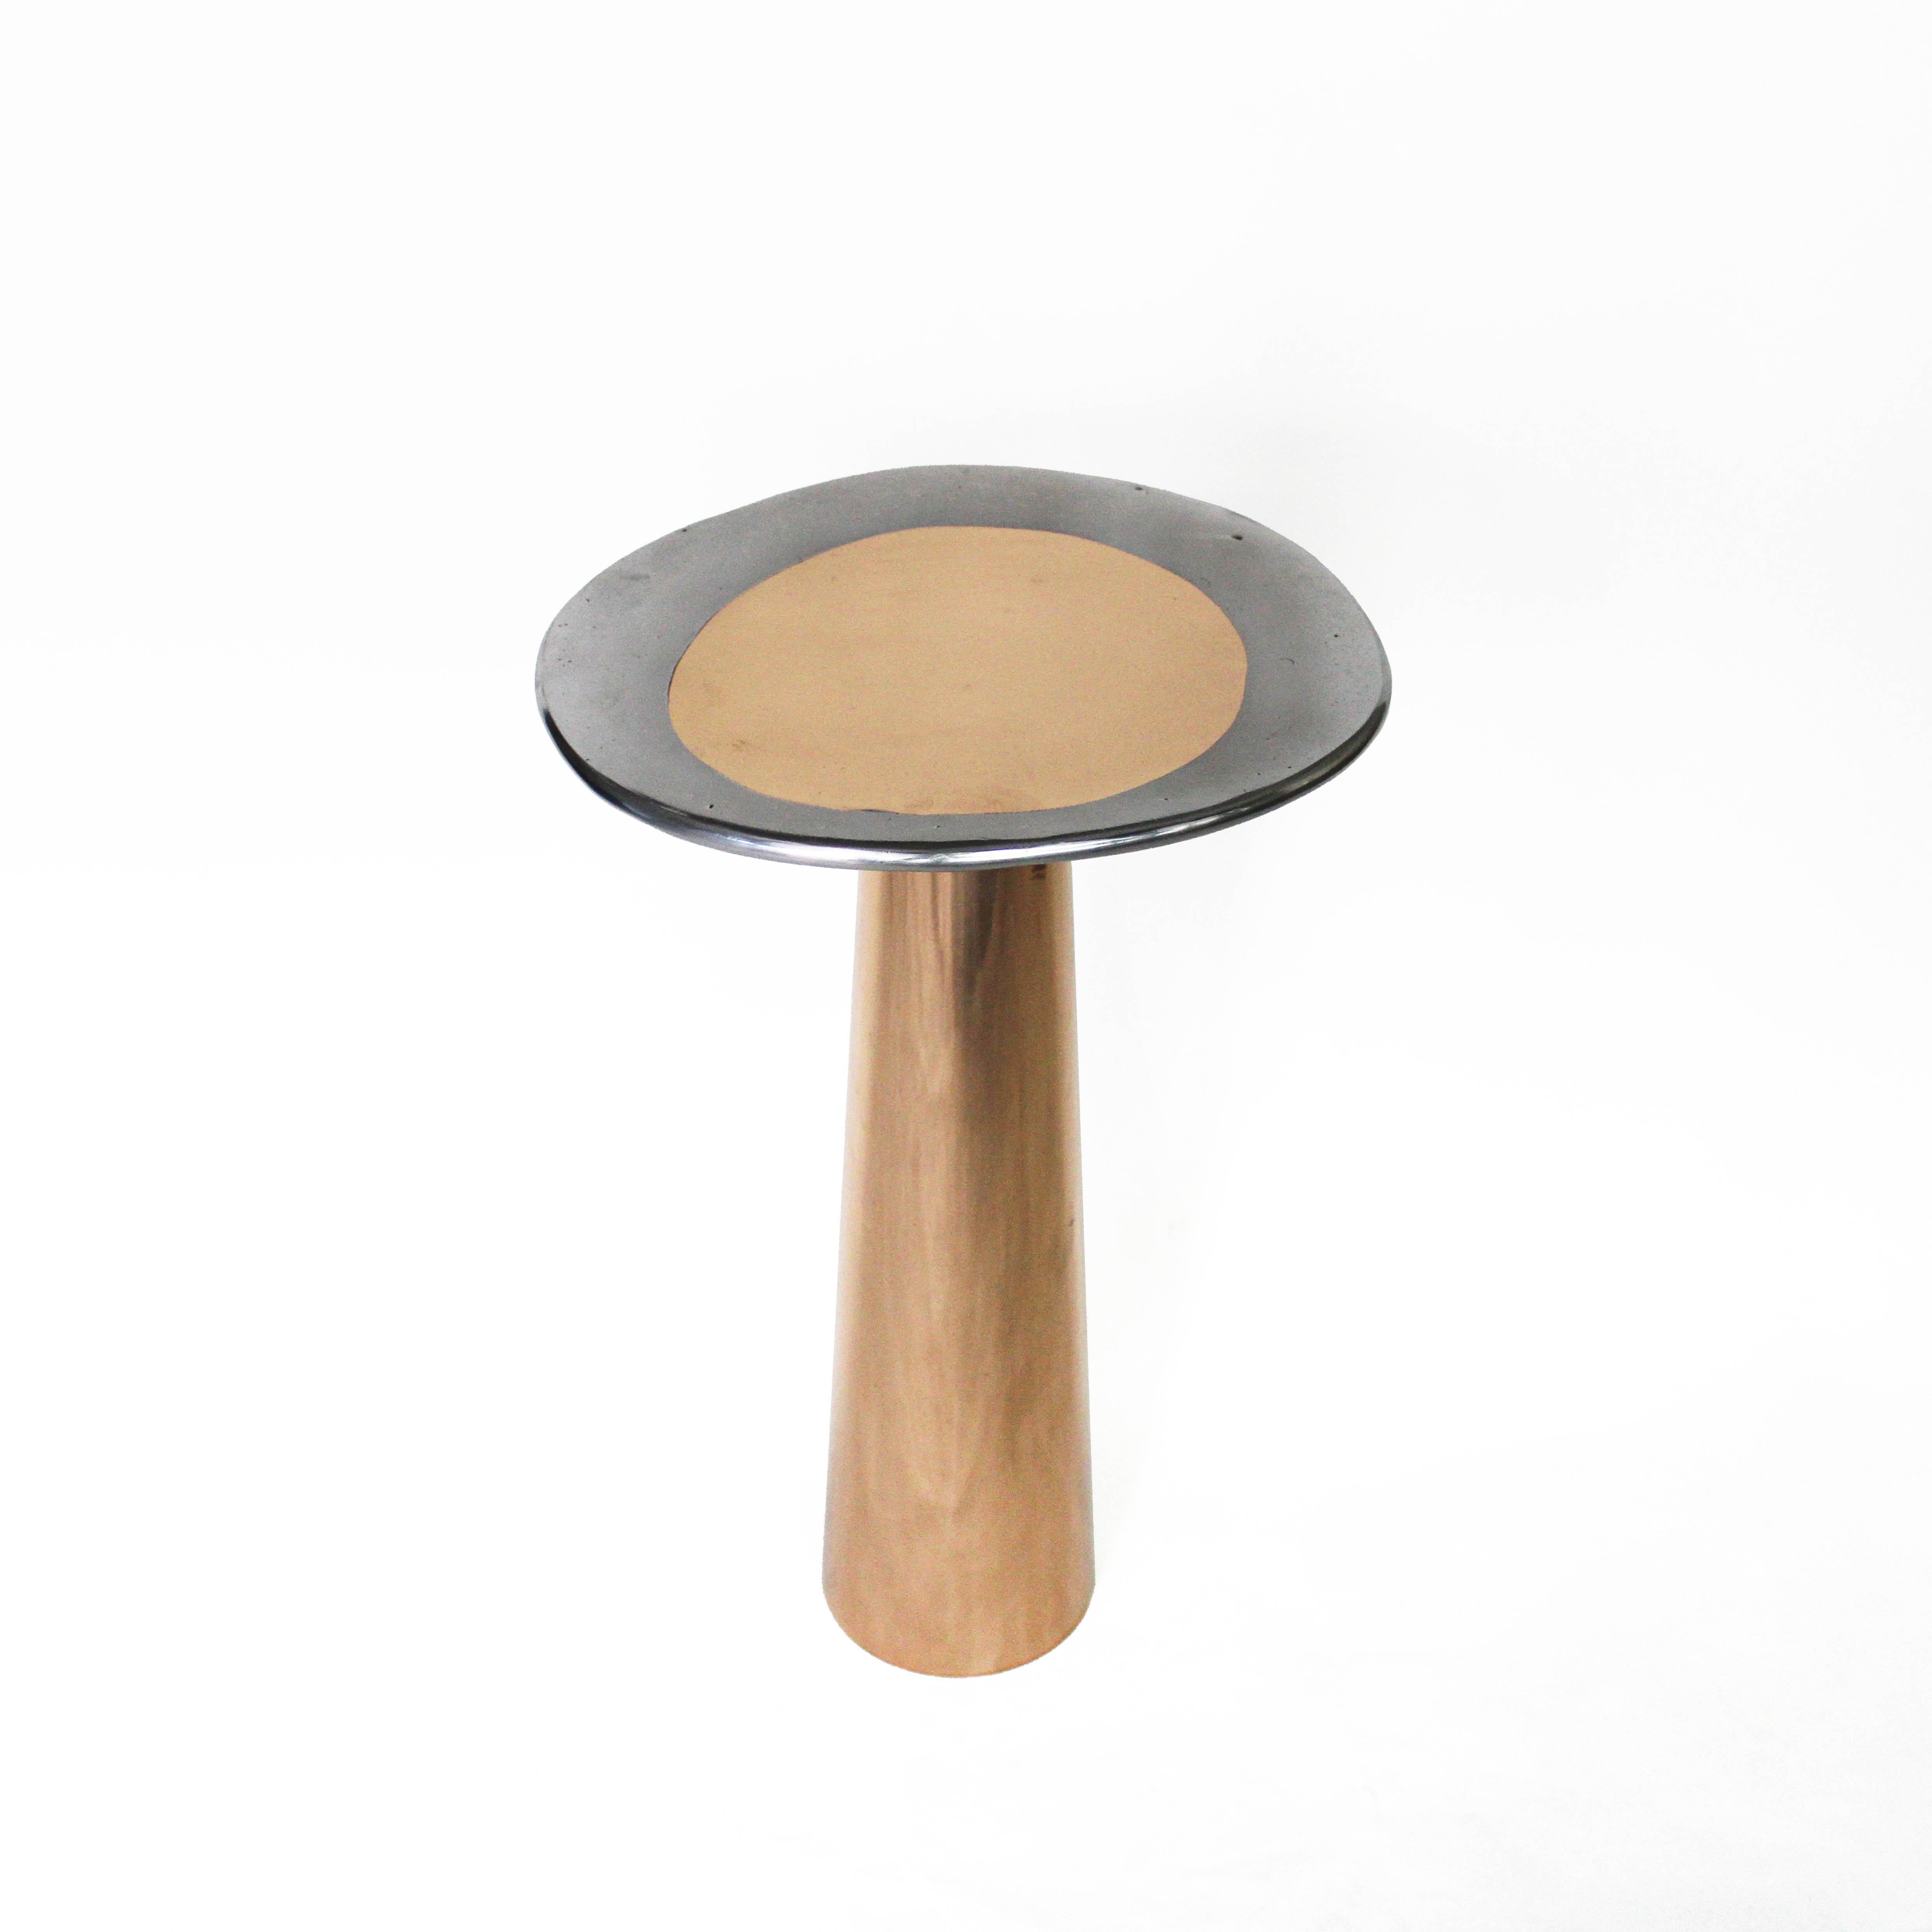 Der Kegel-Tisch ist inspiriert von den Zusammenhängen zwischen den Elementen und den Lebensformen. Die konische Form der Basis, die asymmetrische Form der Platte und die abgerundeten Kanten verleihen dem Tisch ein seidiges Aussehen.

Der Cone Table,